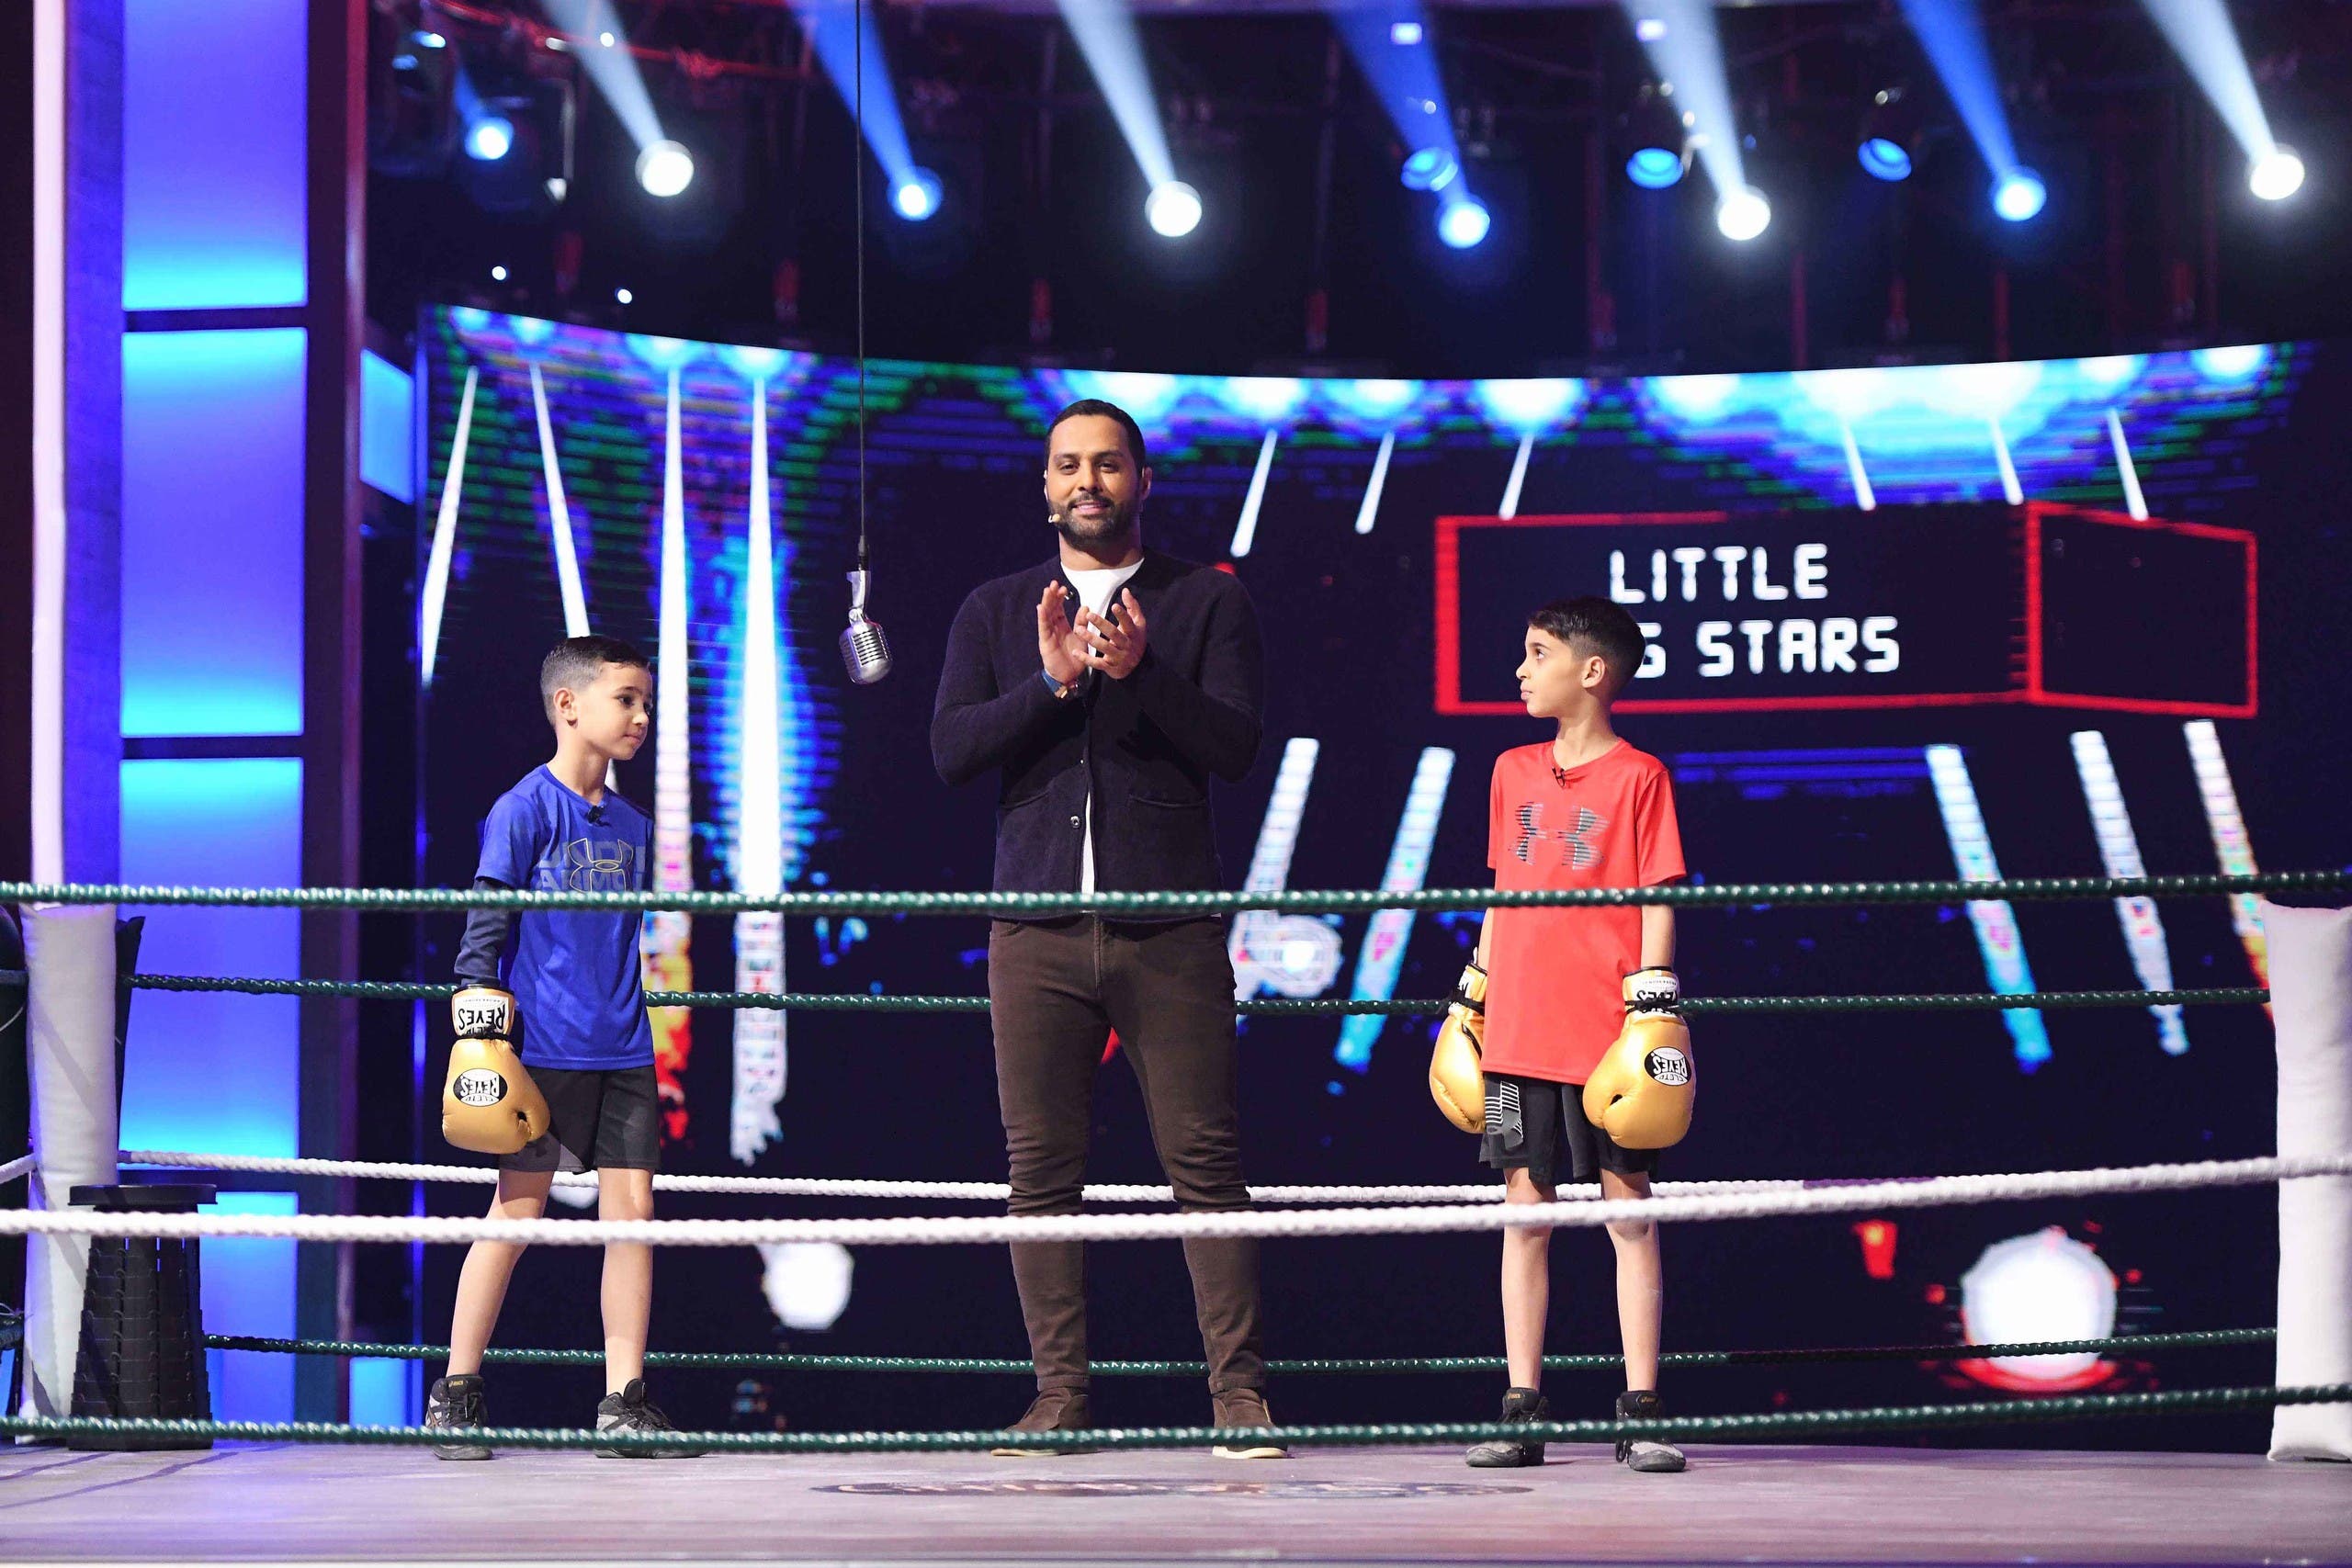 ياسر القحطاني يكتشف مواهب الأطفال بموسم “نجوم صغار” الثاني على MBC